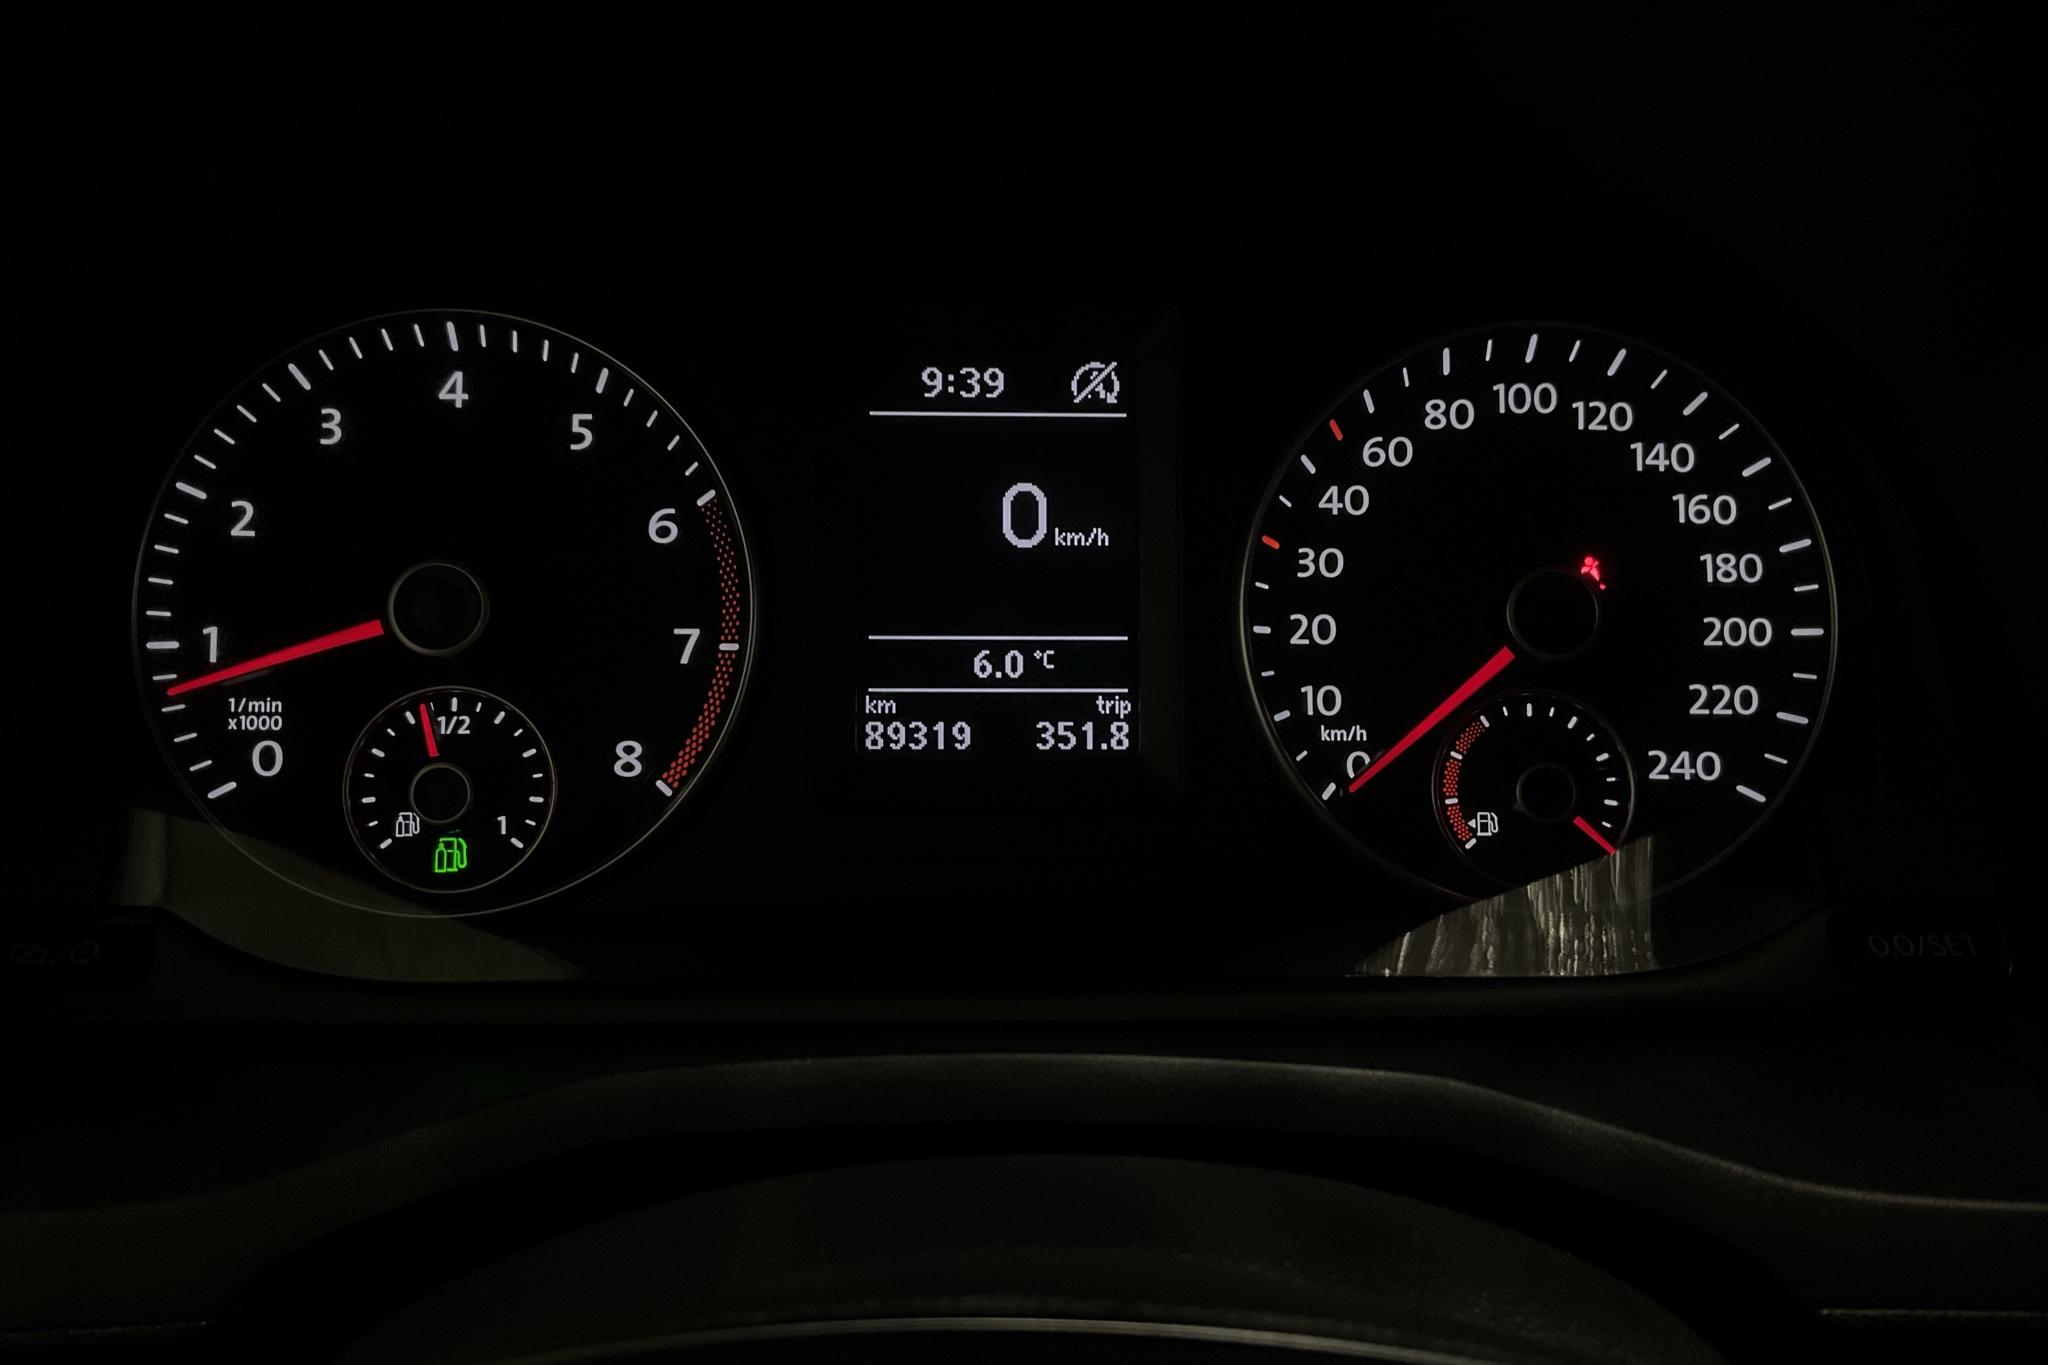 VW Caddy 1.4 TGI Maxi Skåp (110hk) - 8 931 mil - Automat - vit - 2019